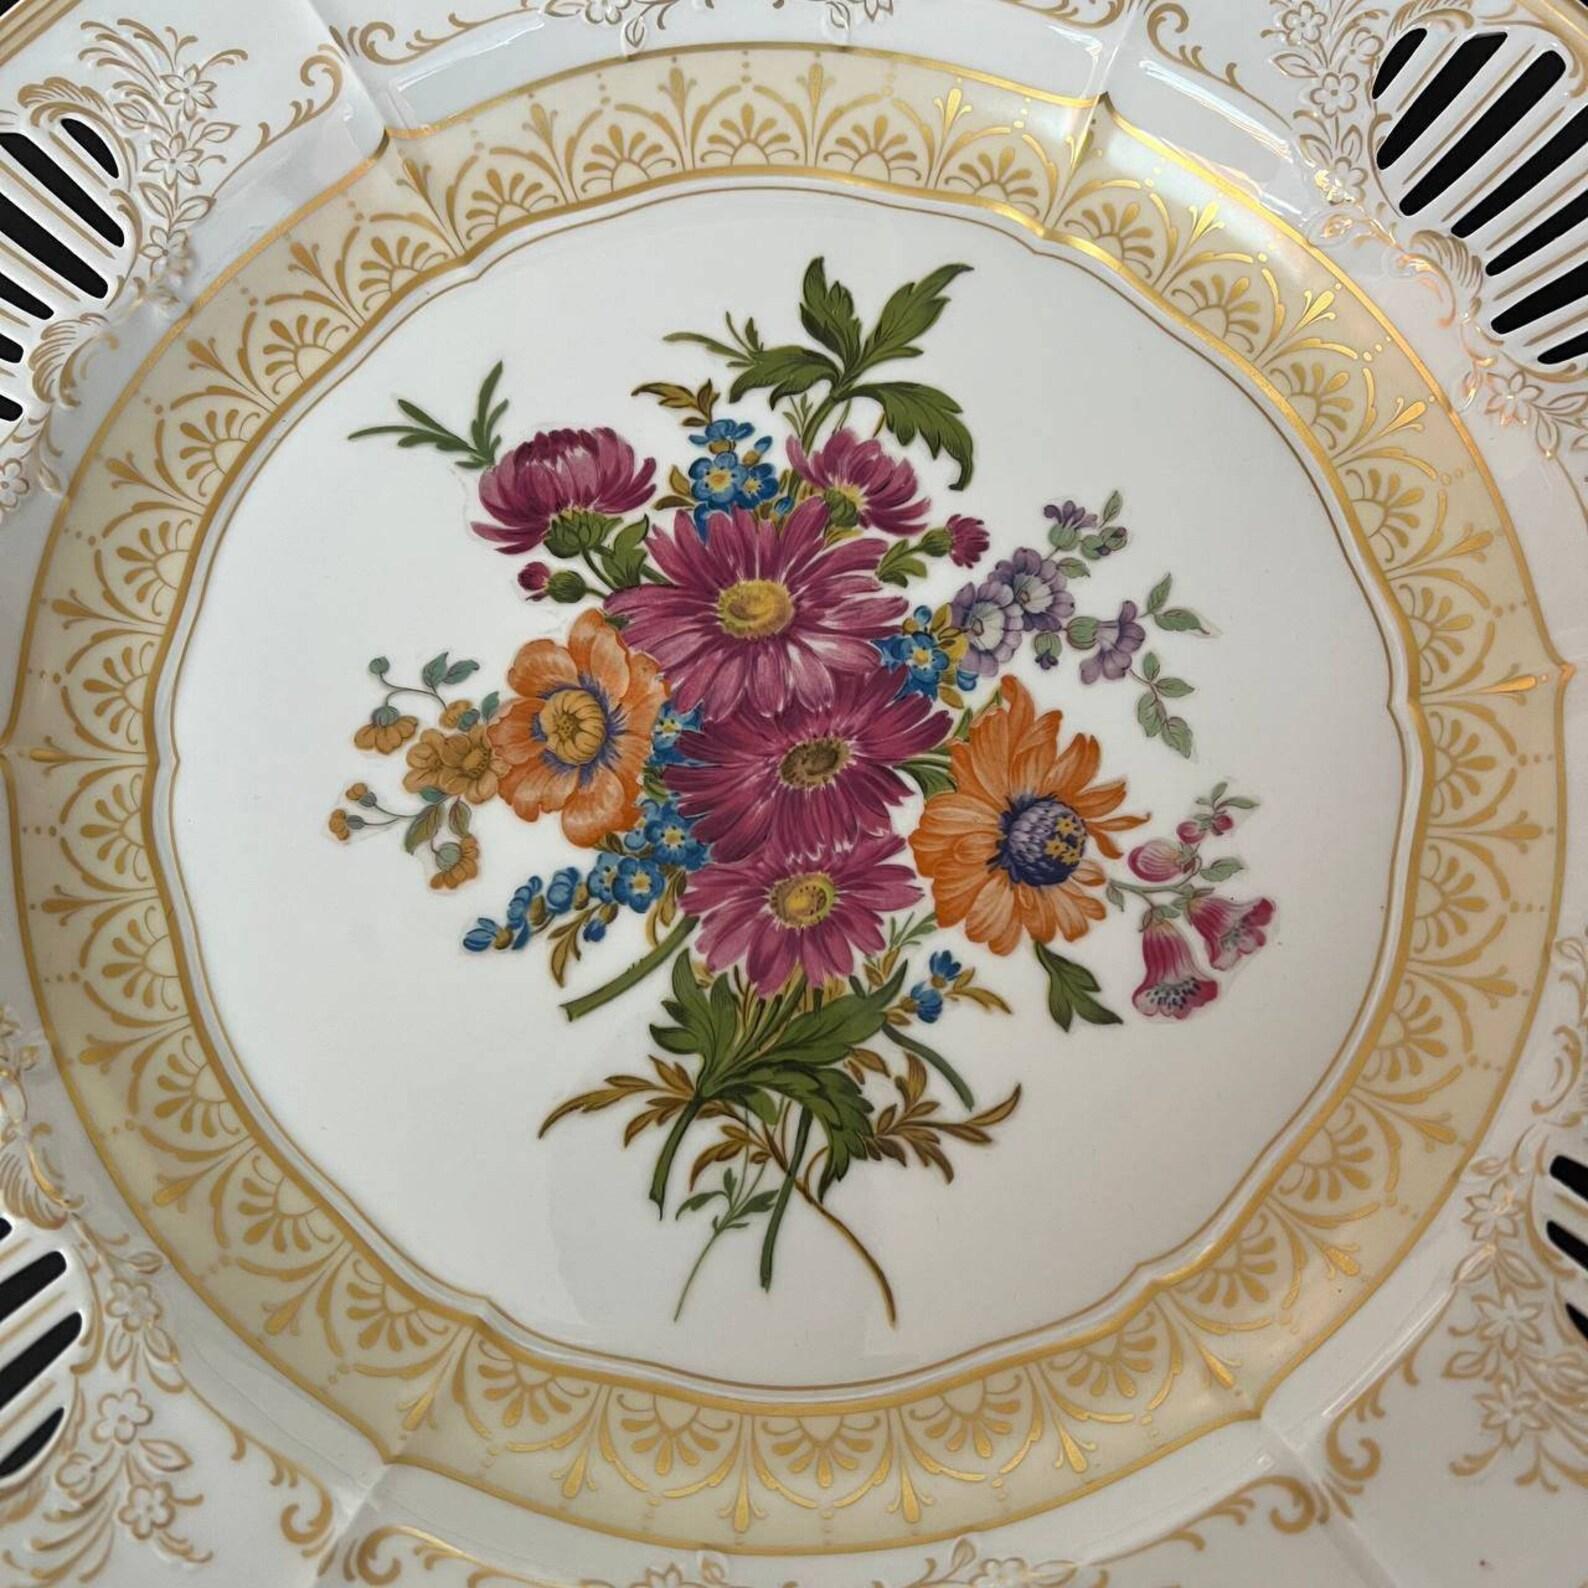  Grande assiette décorative de la célèbre manufacture allemande Kaiser. 

  Produit dans les années 1960. 

 Grande assiette décorative allemande en porcelaine à motif floral, dorée à 24 carats de la période victorienne du milieu du 20e siècle. 

